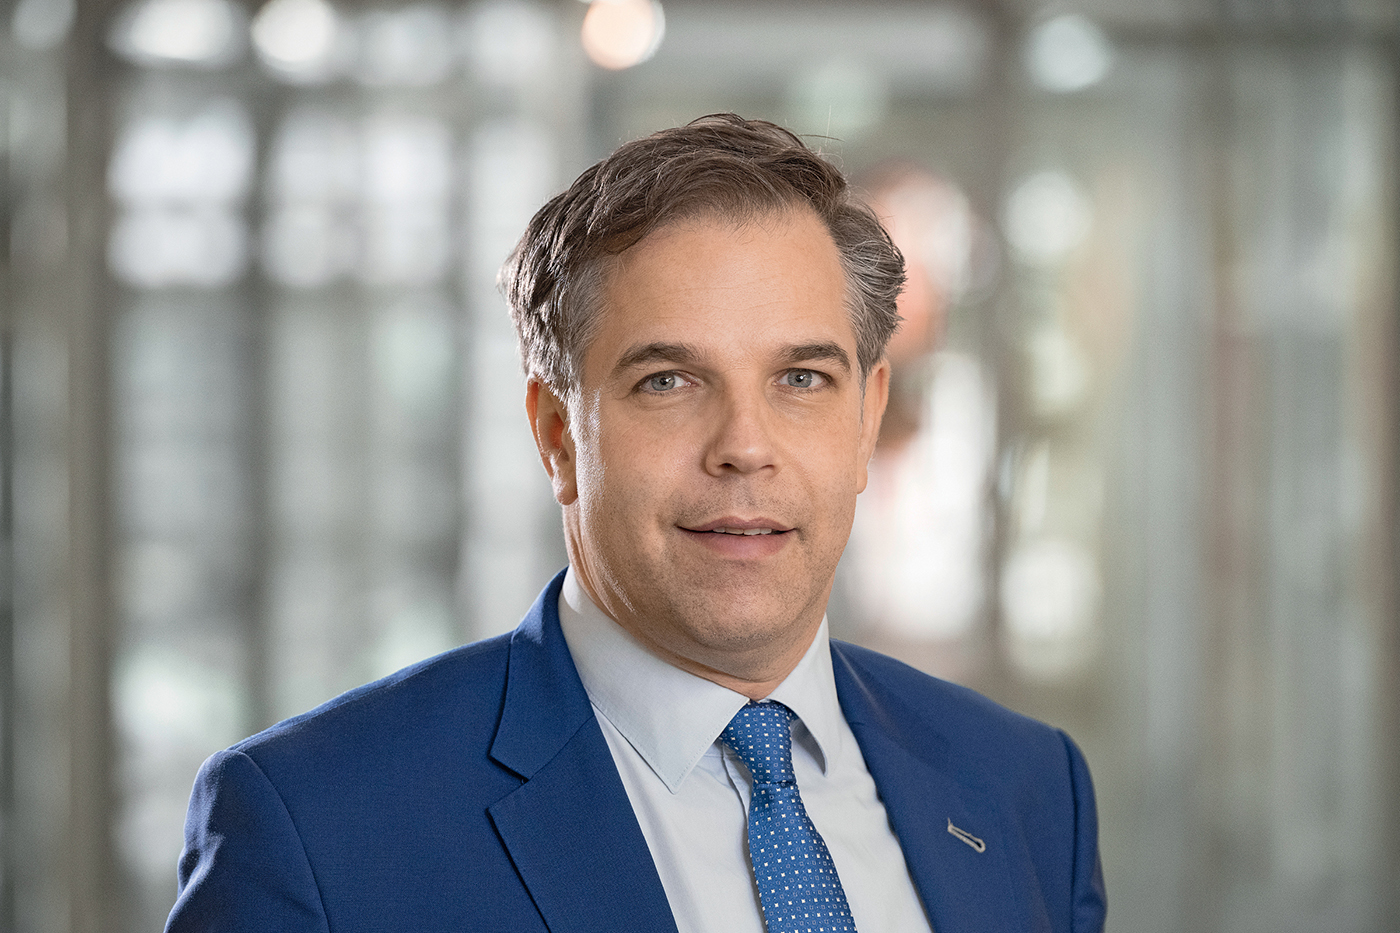 Markus Sattler, Senior Vice President of Würth Group